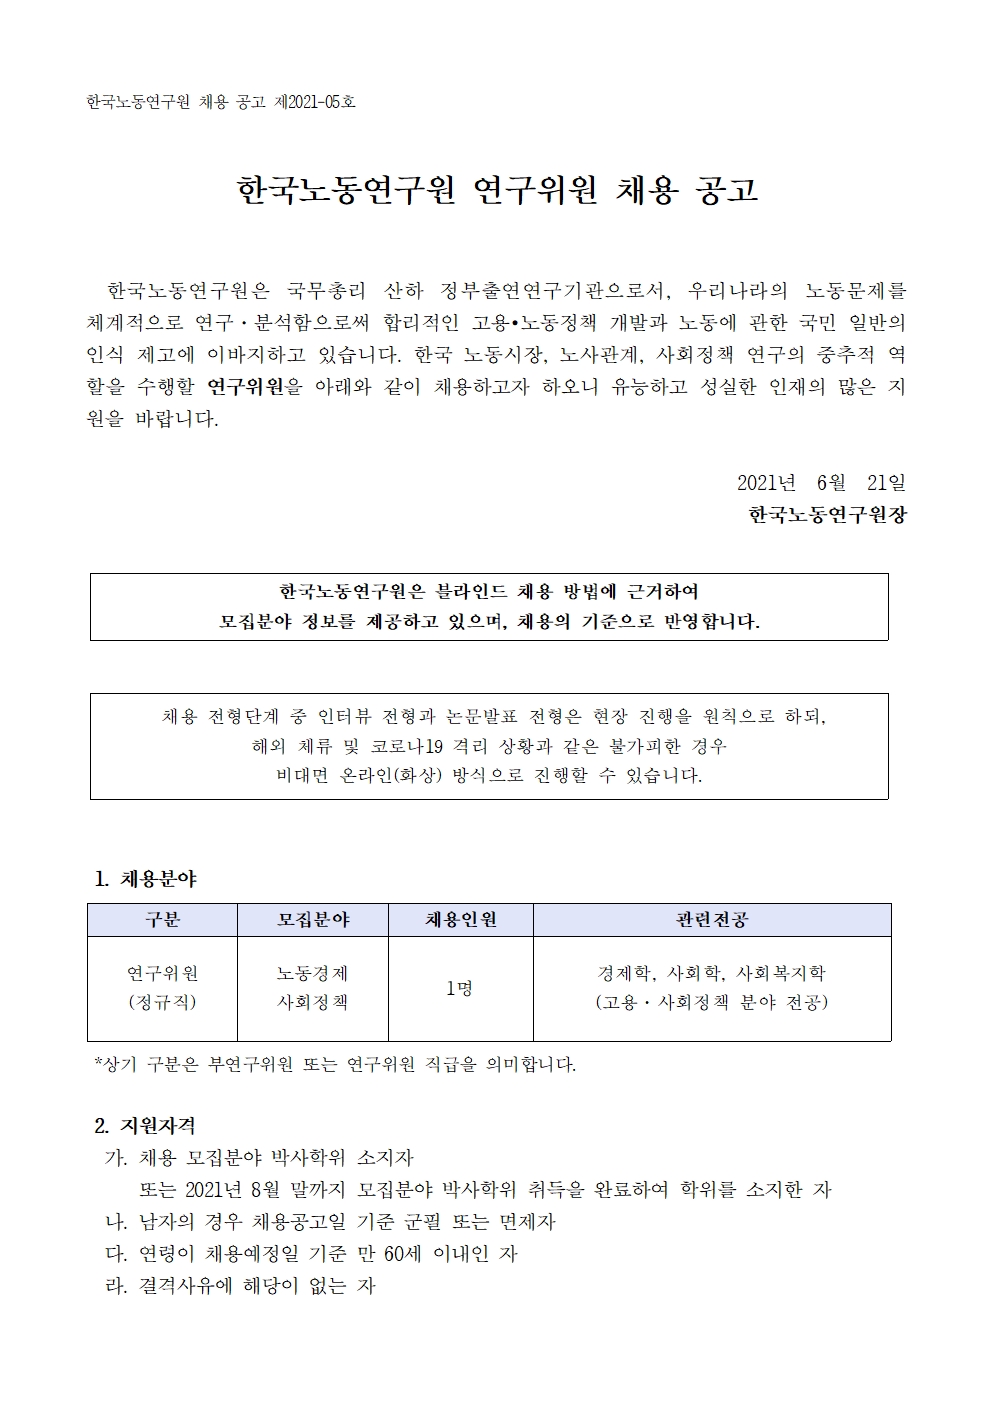 한국노동연구원 연구위원 채용공고 1 | 자세한 내용은 하단의 첨부파일을 참조하세요 : 2021-05호 연구위원 채용 공고문.pdf